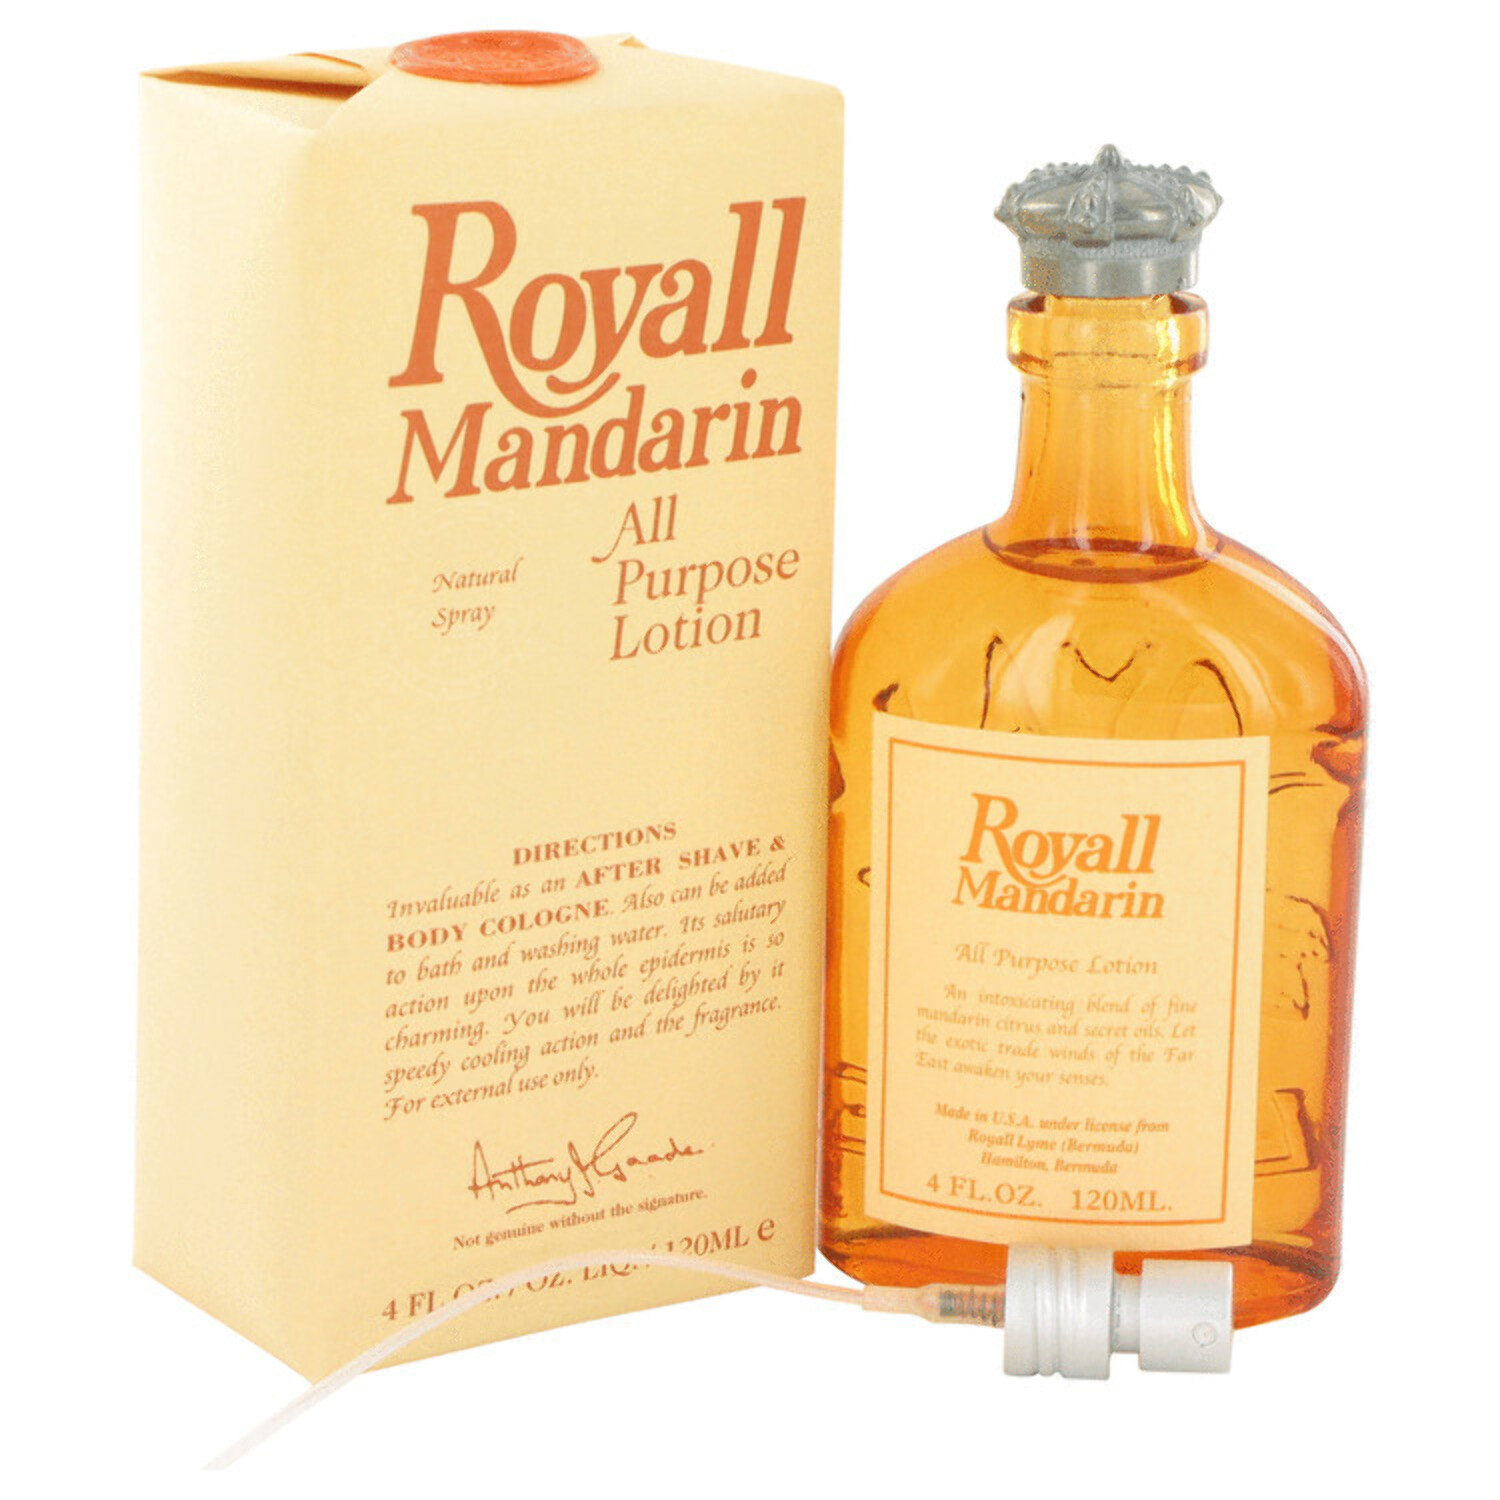 Royall BayRhum Mandarin Orange for Men Aftershave Lotion Cologne, 4oz